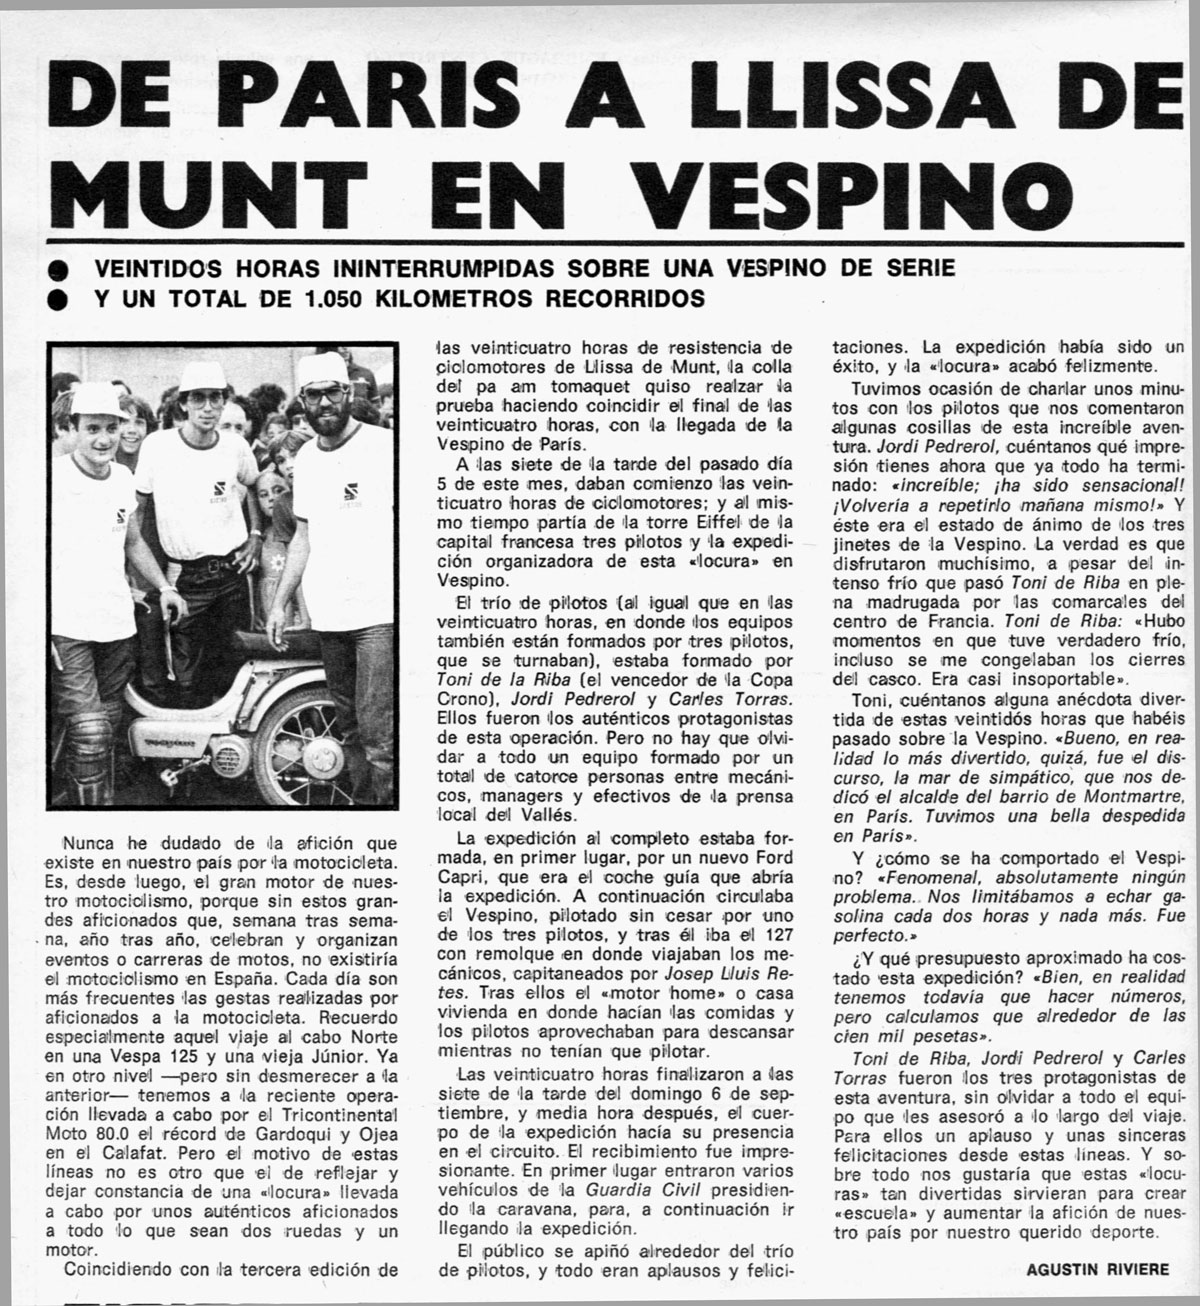 De París a Lliça de Munt en Vespino. 24 H 1981